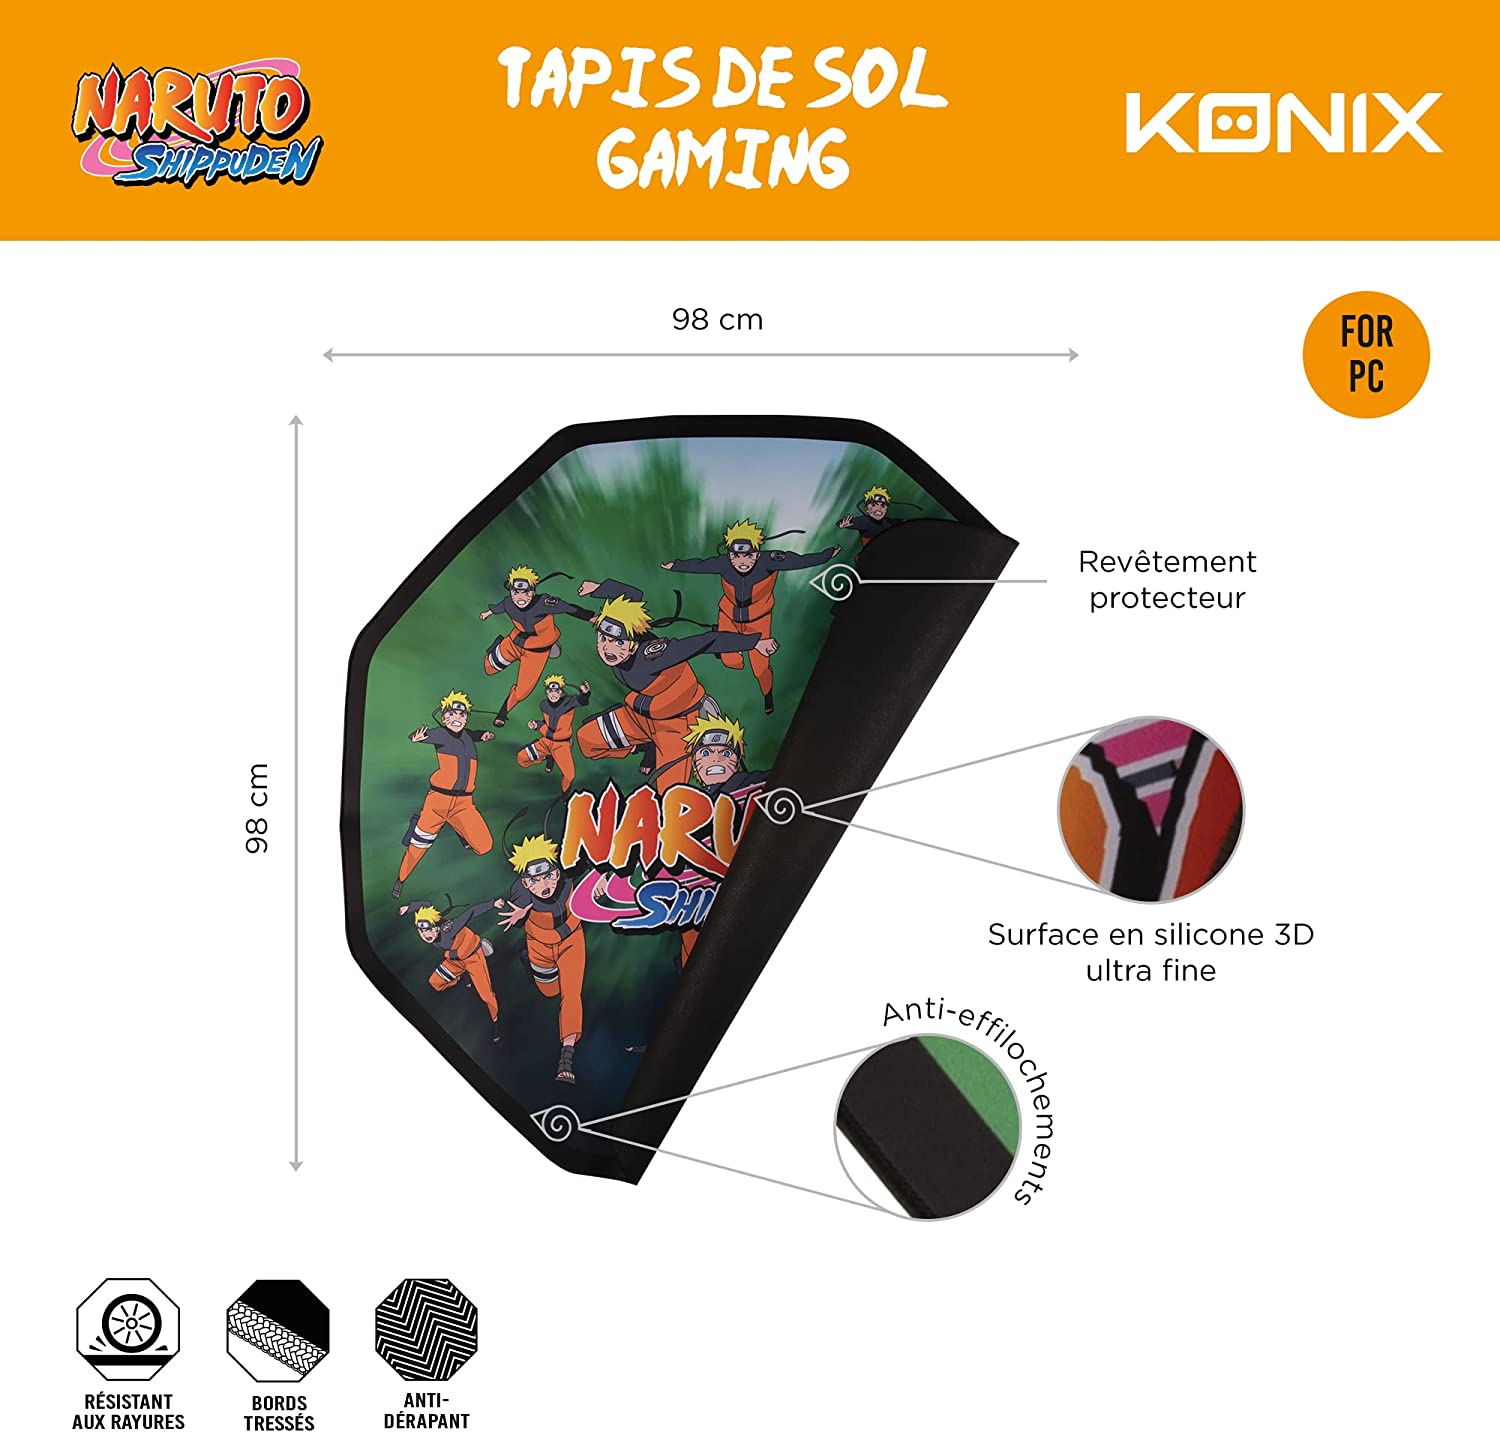 Naruto Multicloning - Tappeto da interni per Gaming 98cm Konix - Oggetti  Fantastici